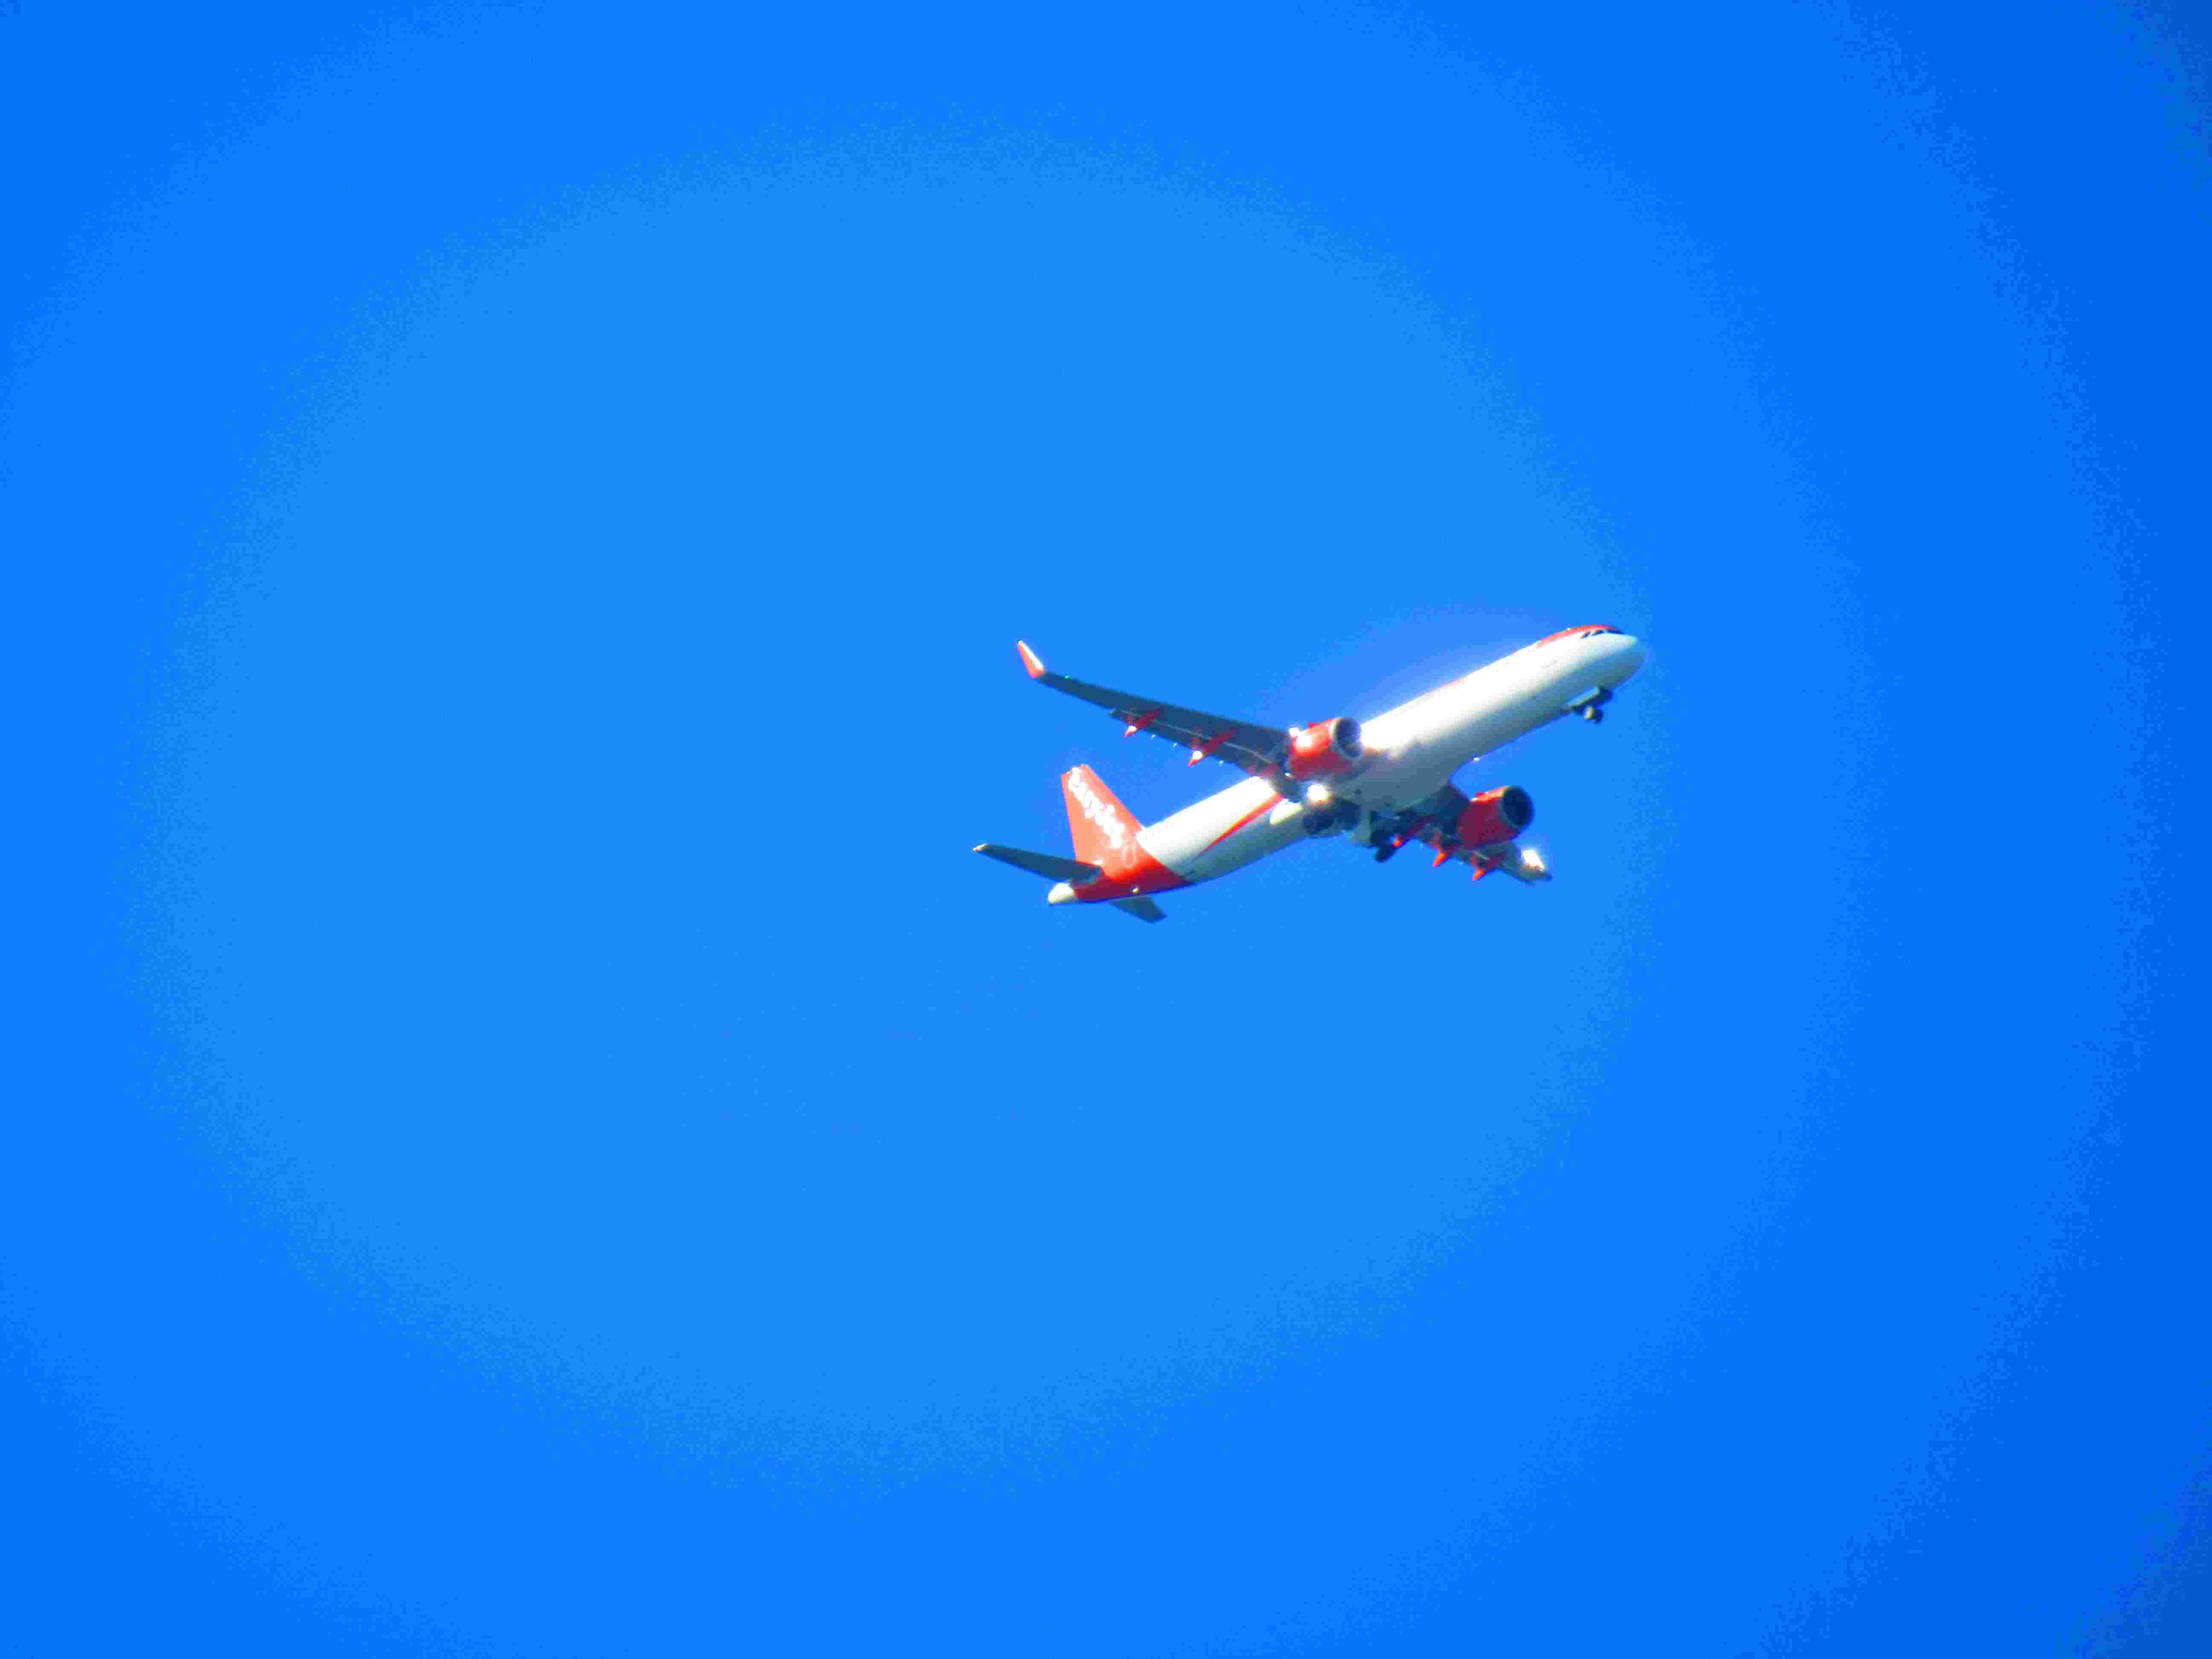 Transport aérien easyjet dans le ciel bleu